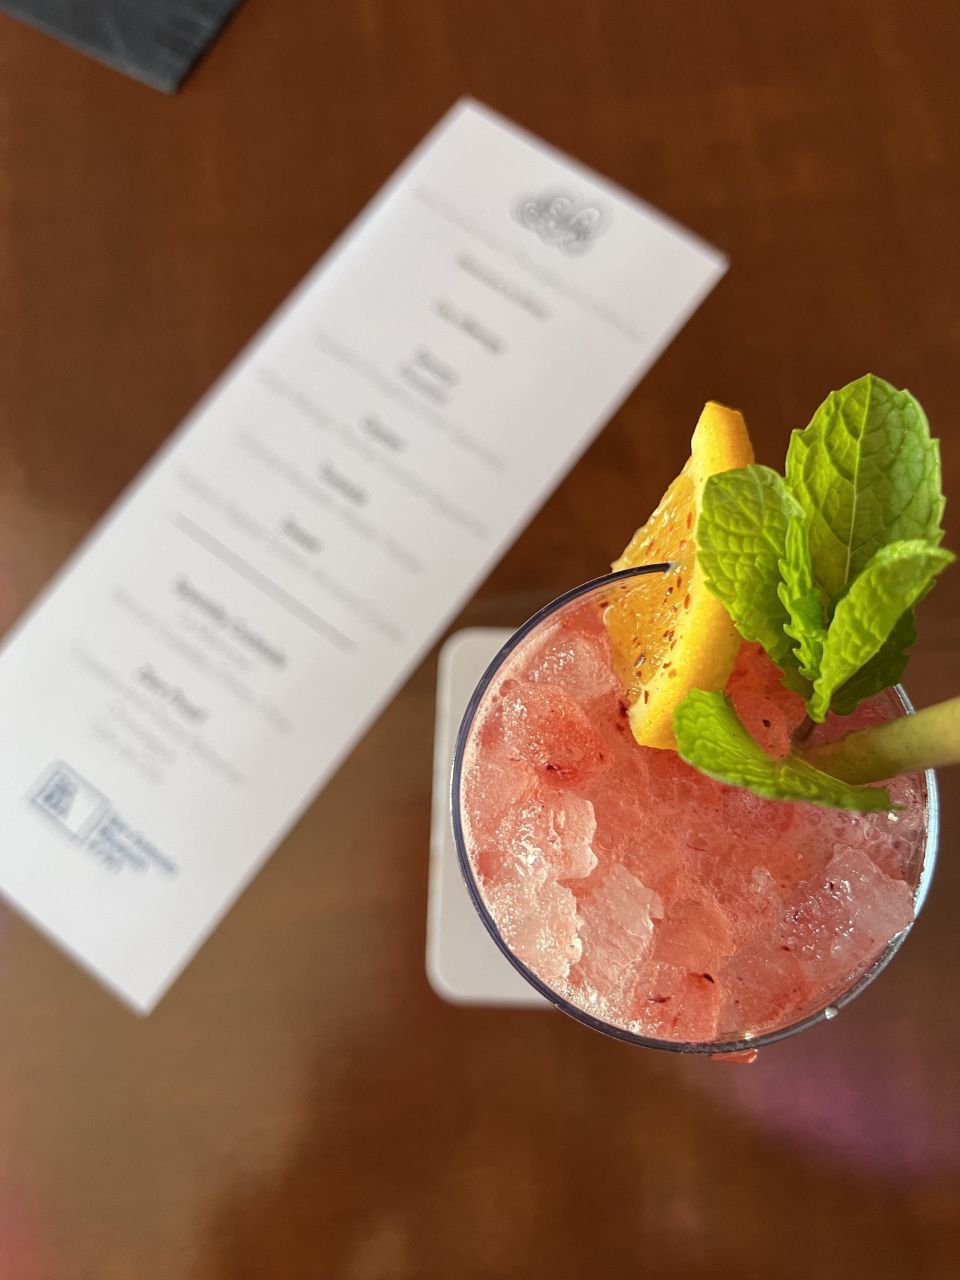 cocktail and menu